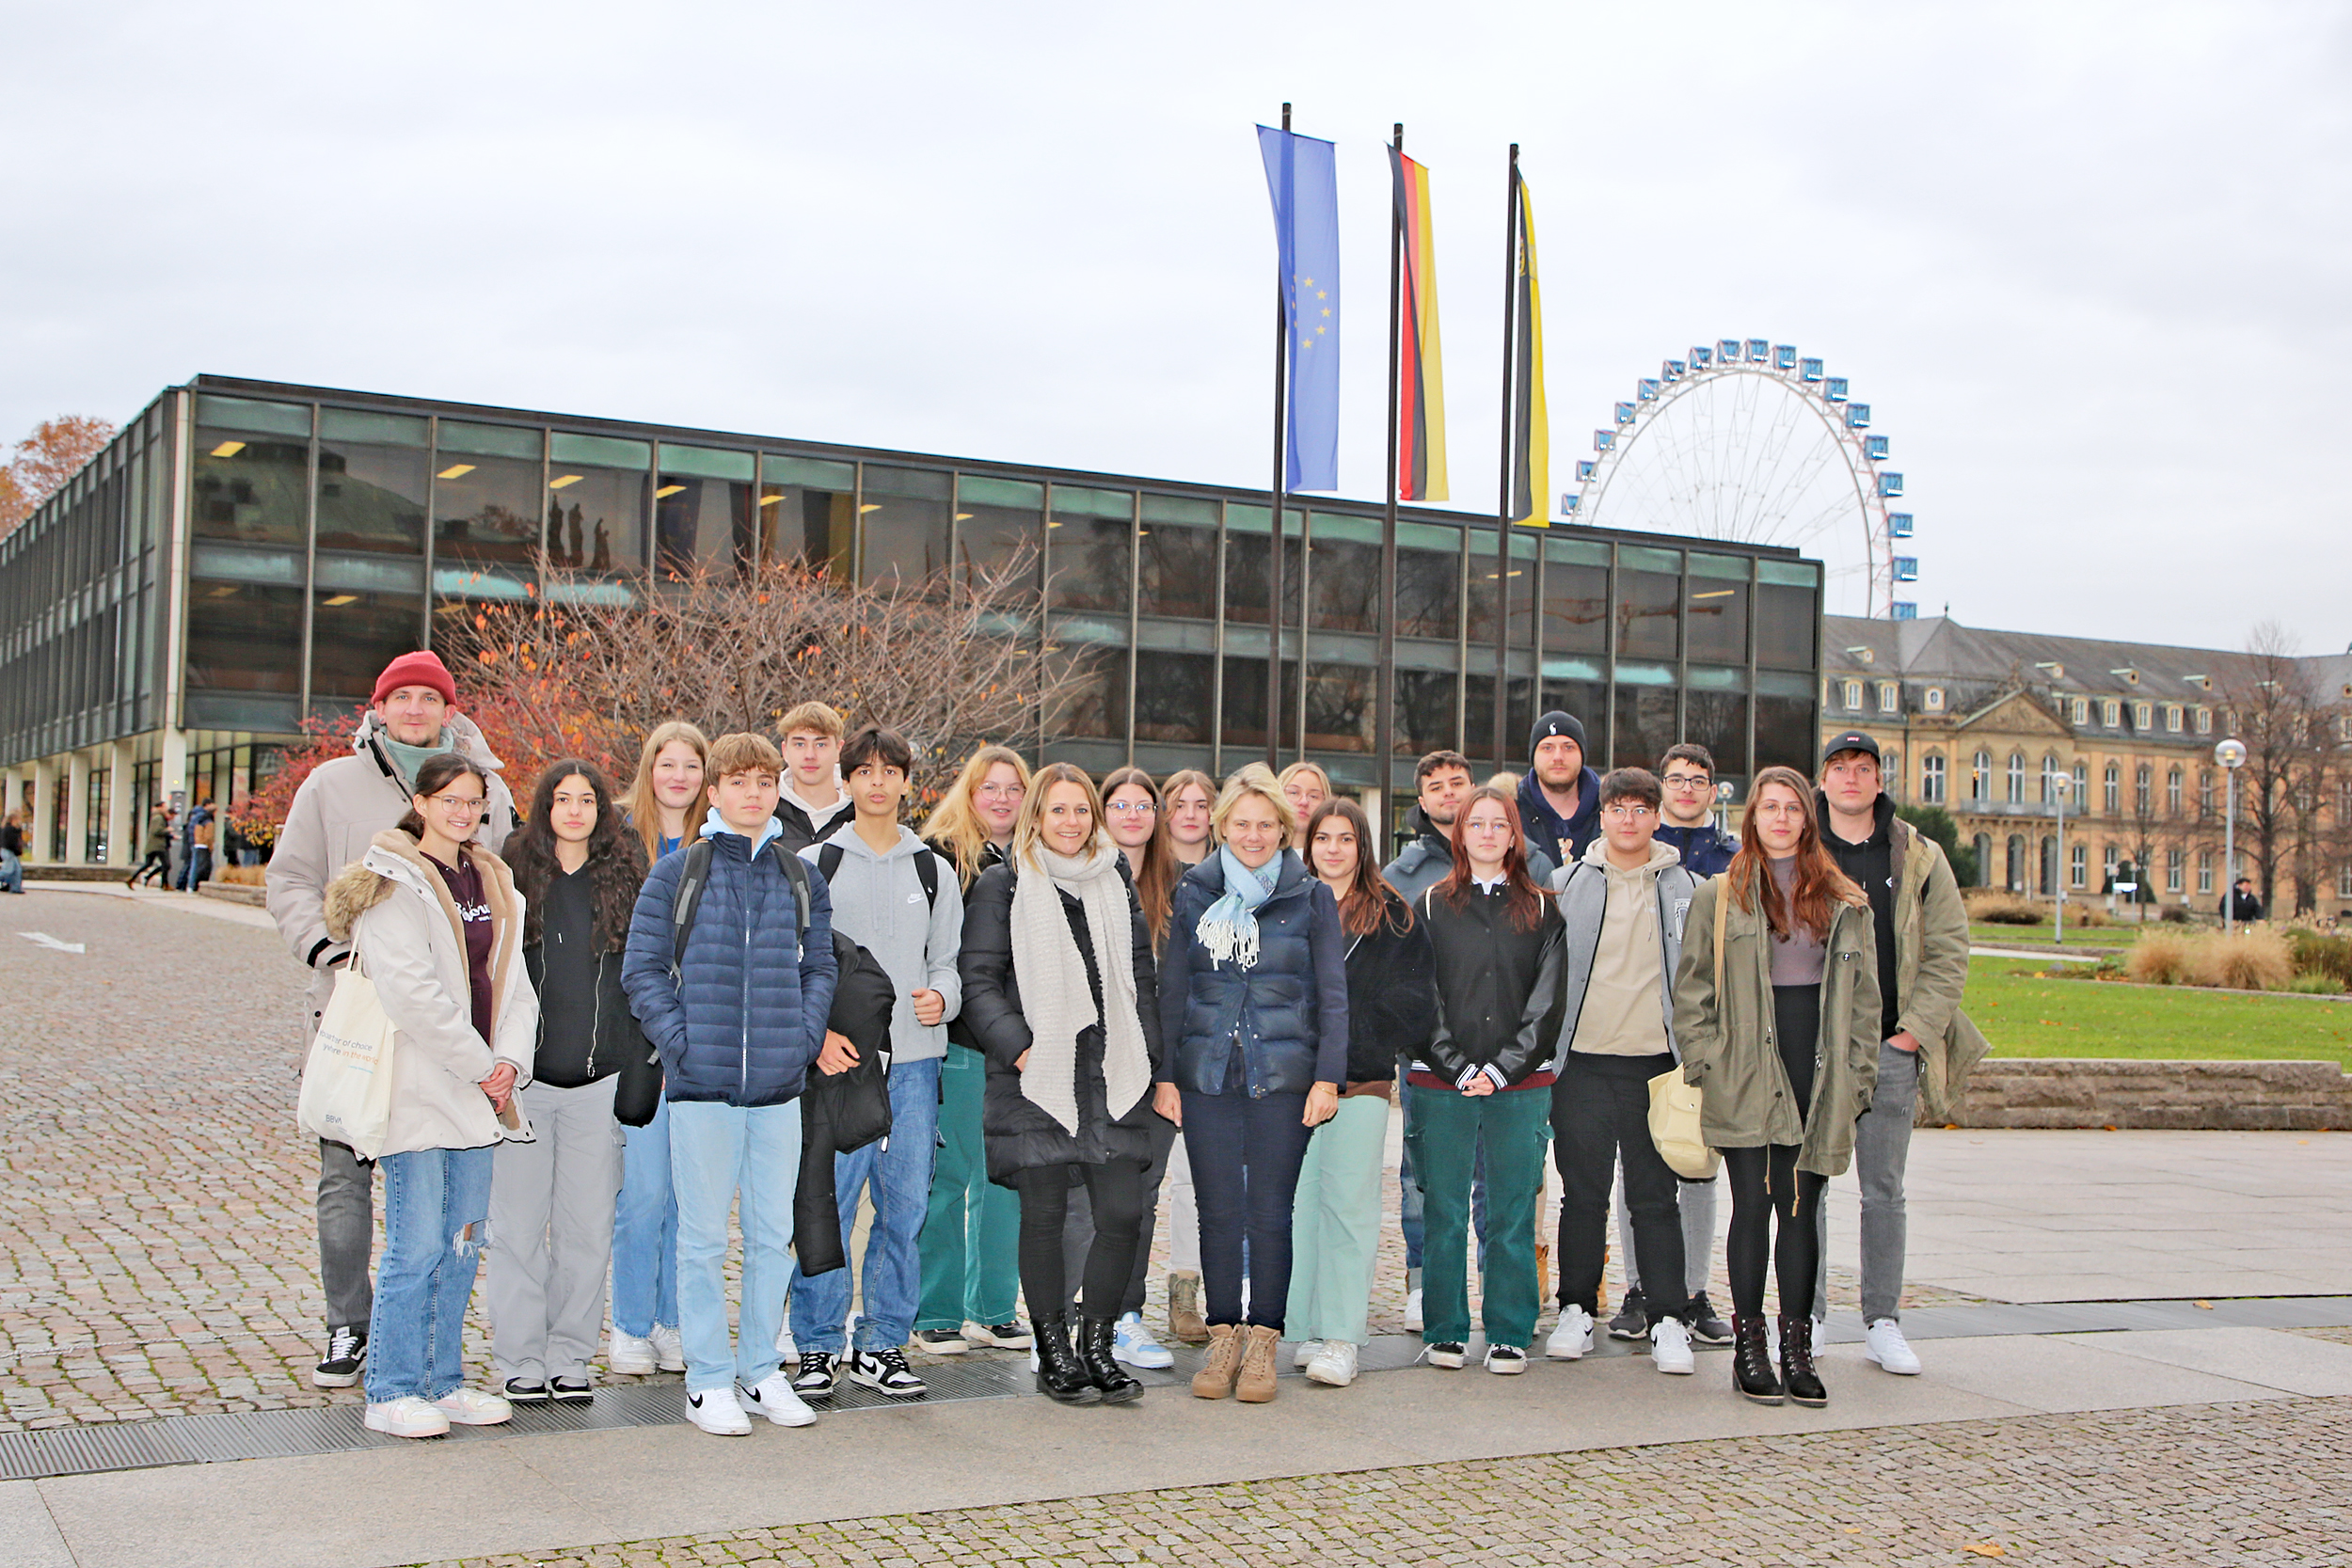 Gruppenfoto: Jugendliche und Mitarbeiter der Mobilen Jugendarbeit Mühlhausen und Rauenberg mit der Landtagsabgeordneten Christiane Staab (CDU) vor dem Landtag von Baden-Württemberg.